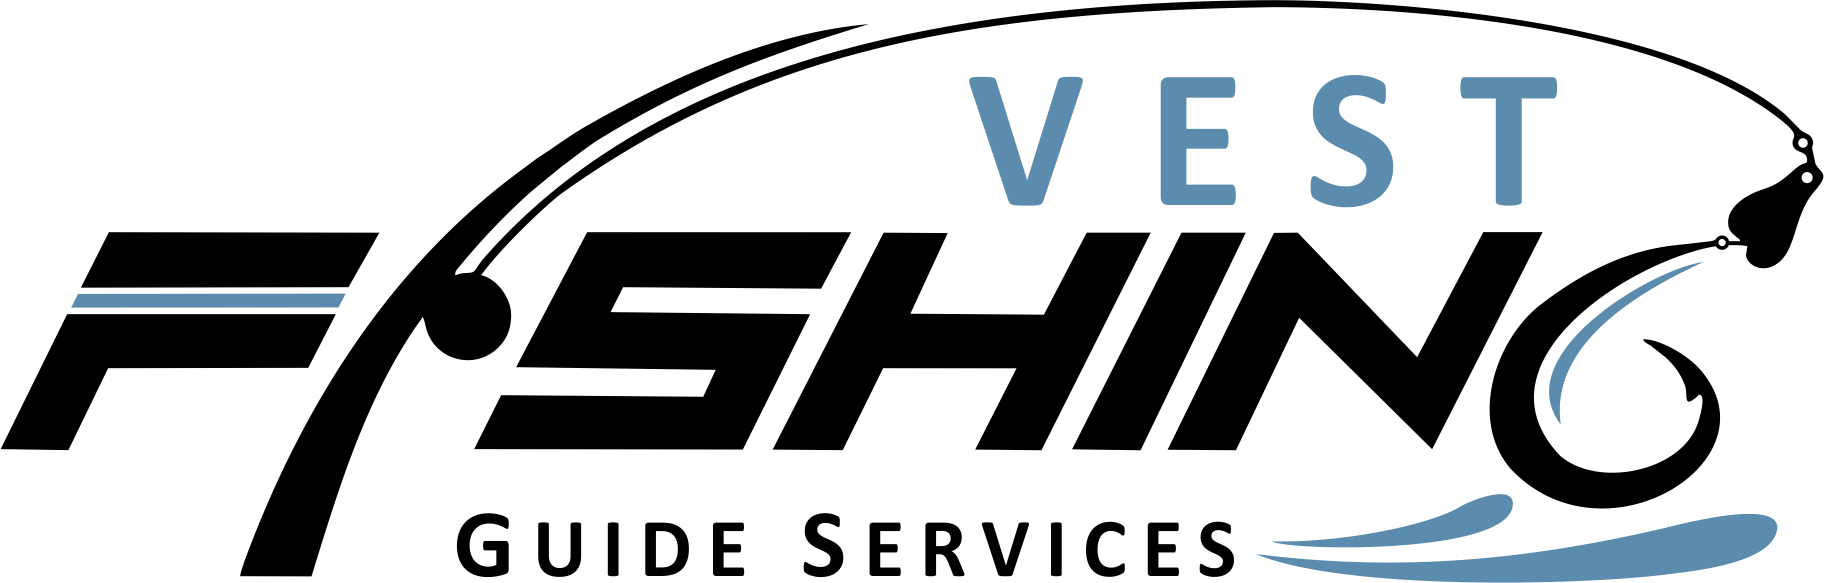 vest fishing guide logo